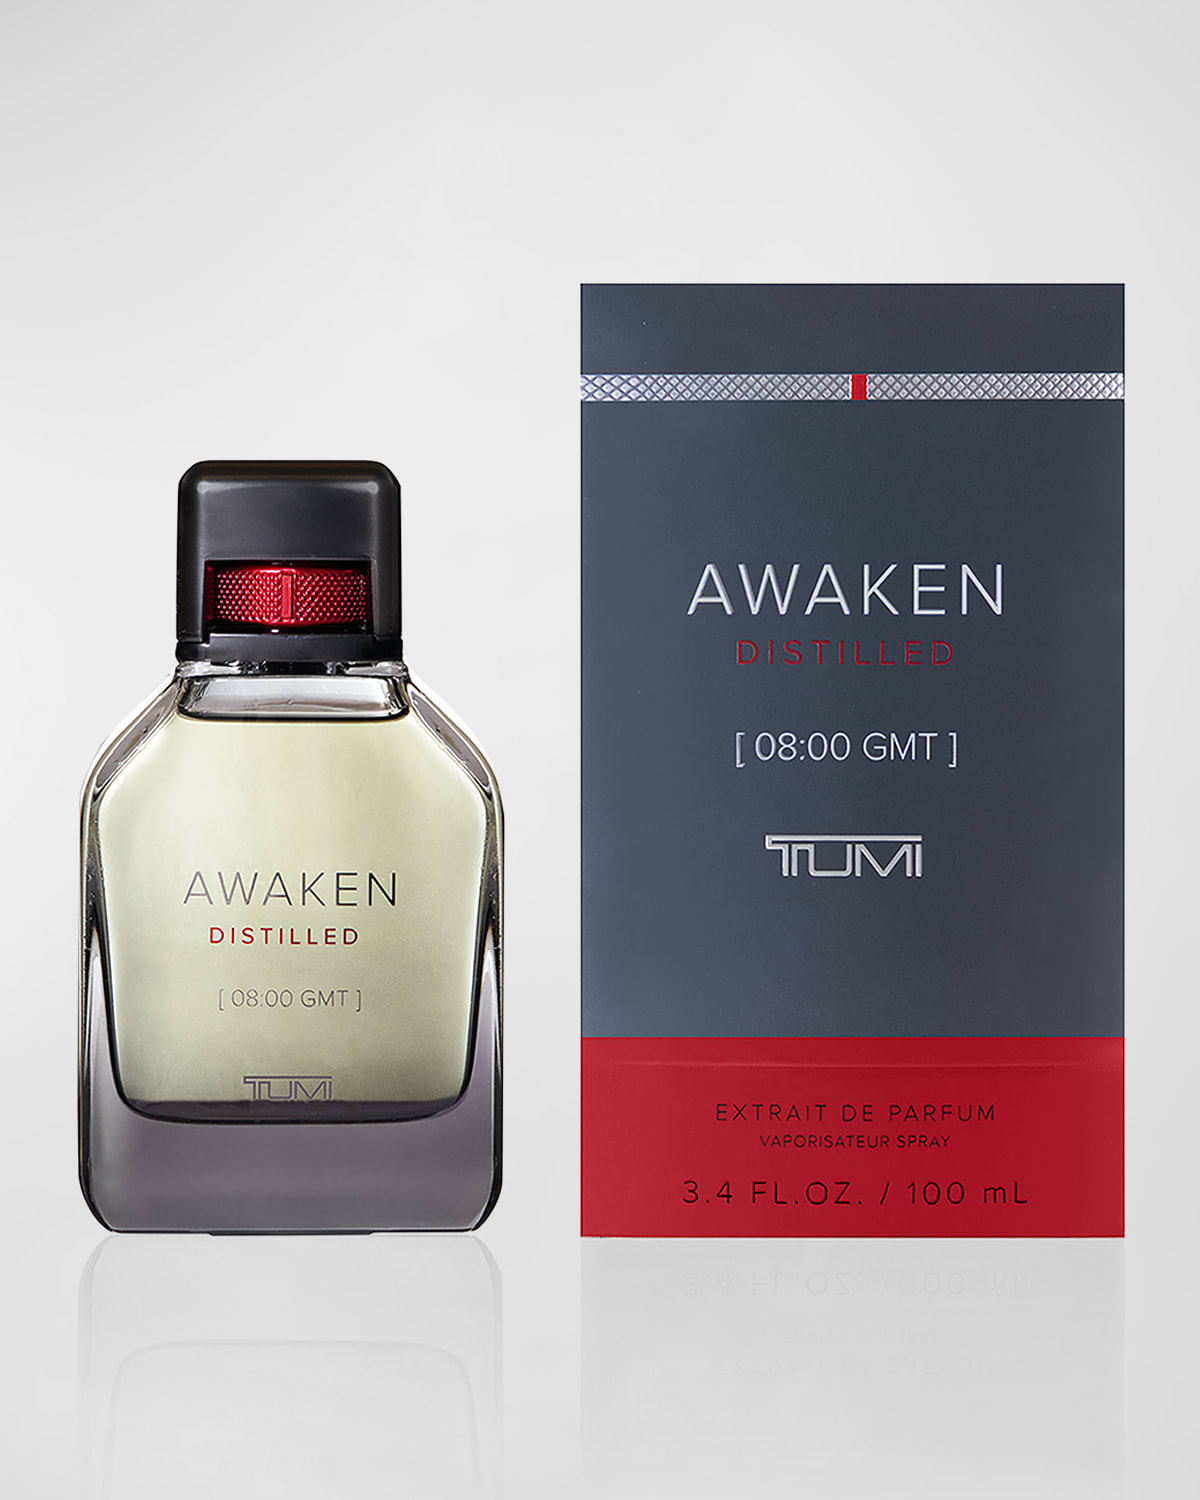 Awaken Distilled [08:00 GMT] Extrait De Parfum, 3.4 oz.